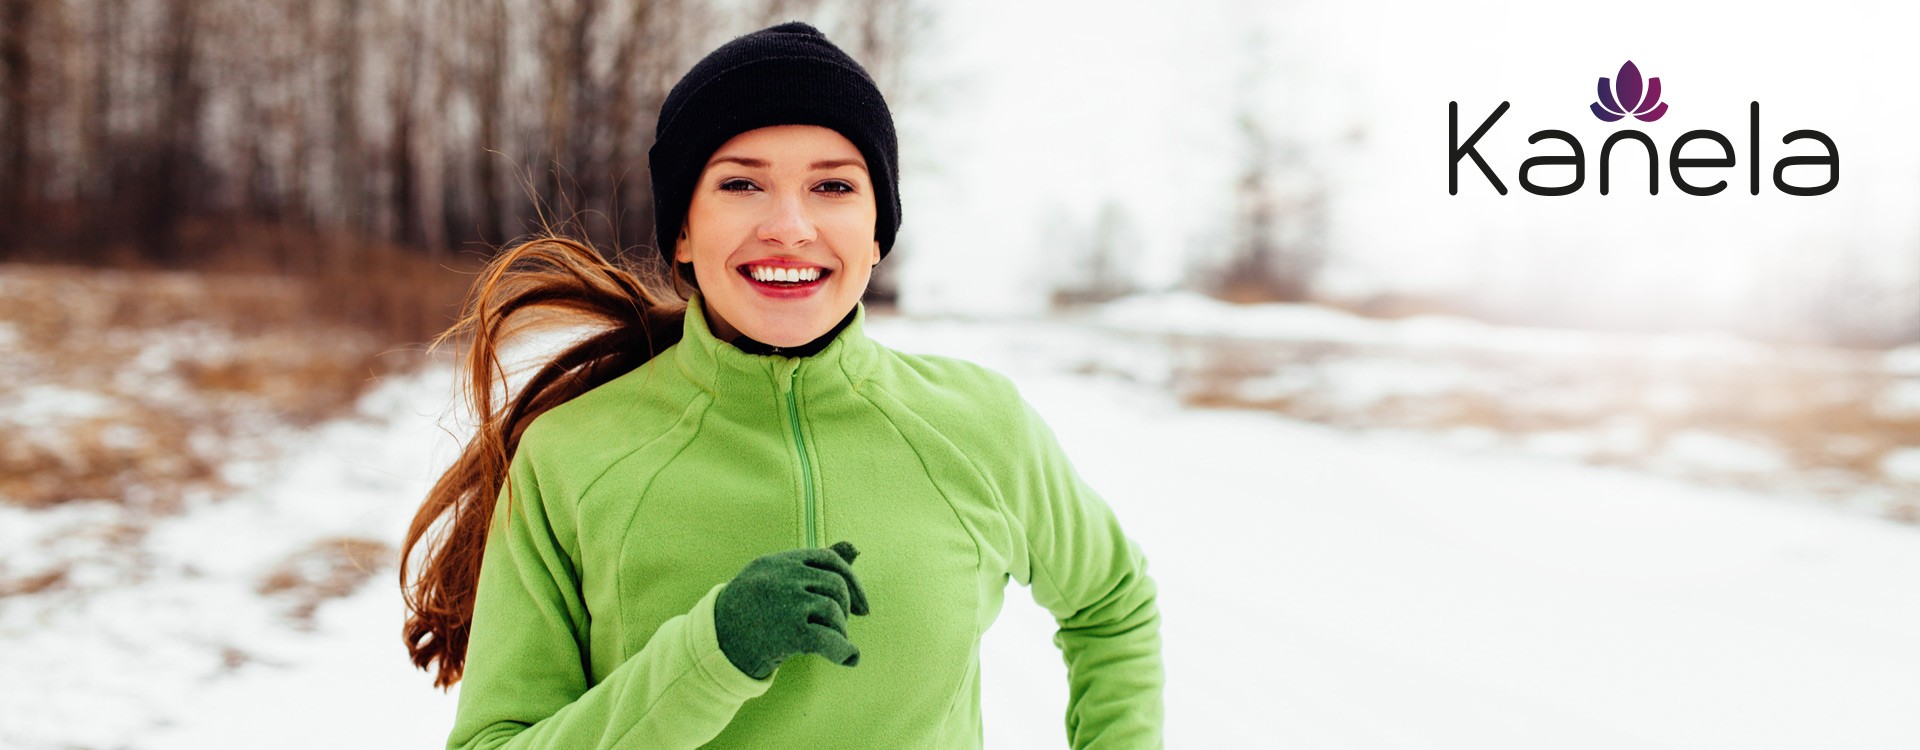 Sport en hiver : conseils de motivation contre le froid et le mauvais temps